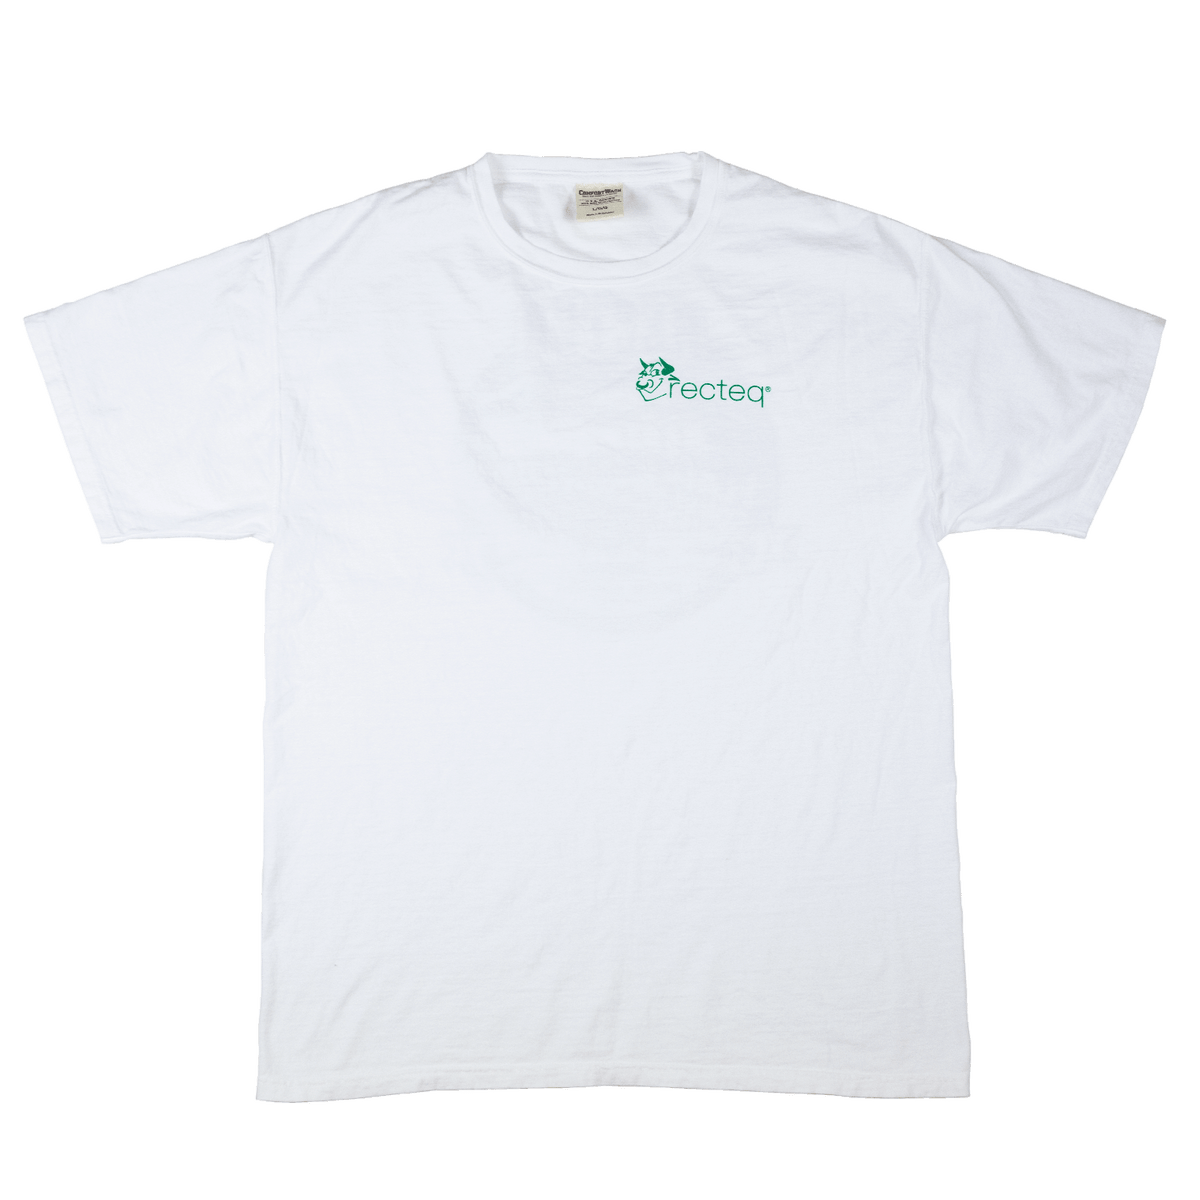 White and Green Georgia Destination Shirt – recteq